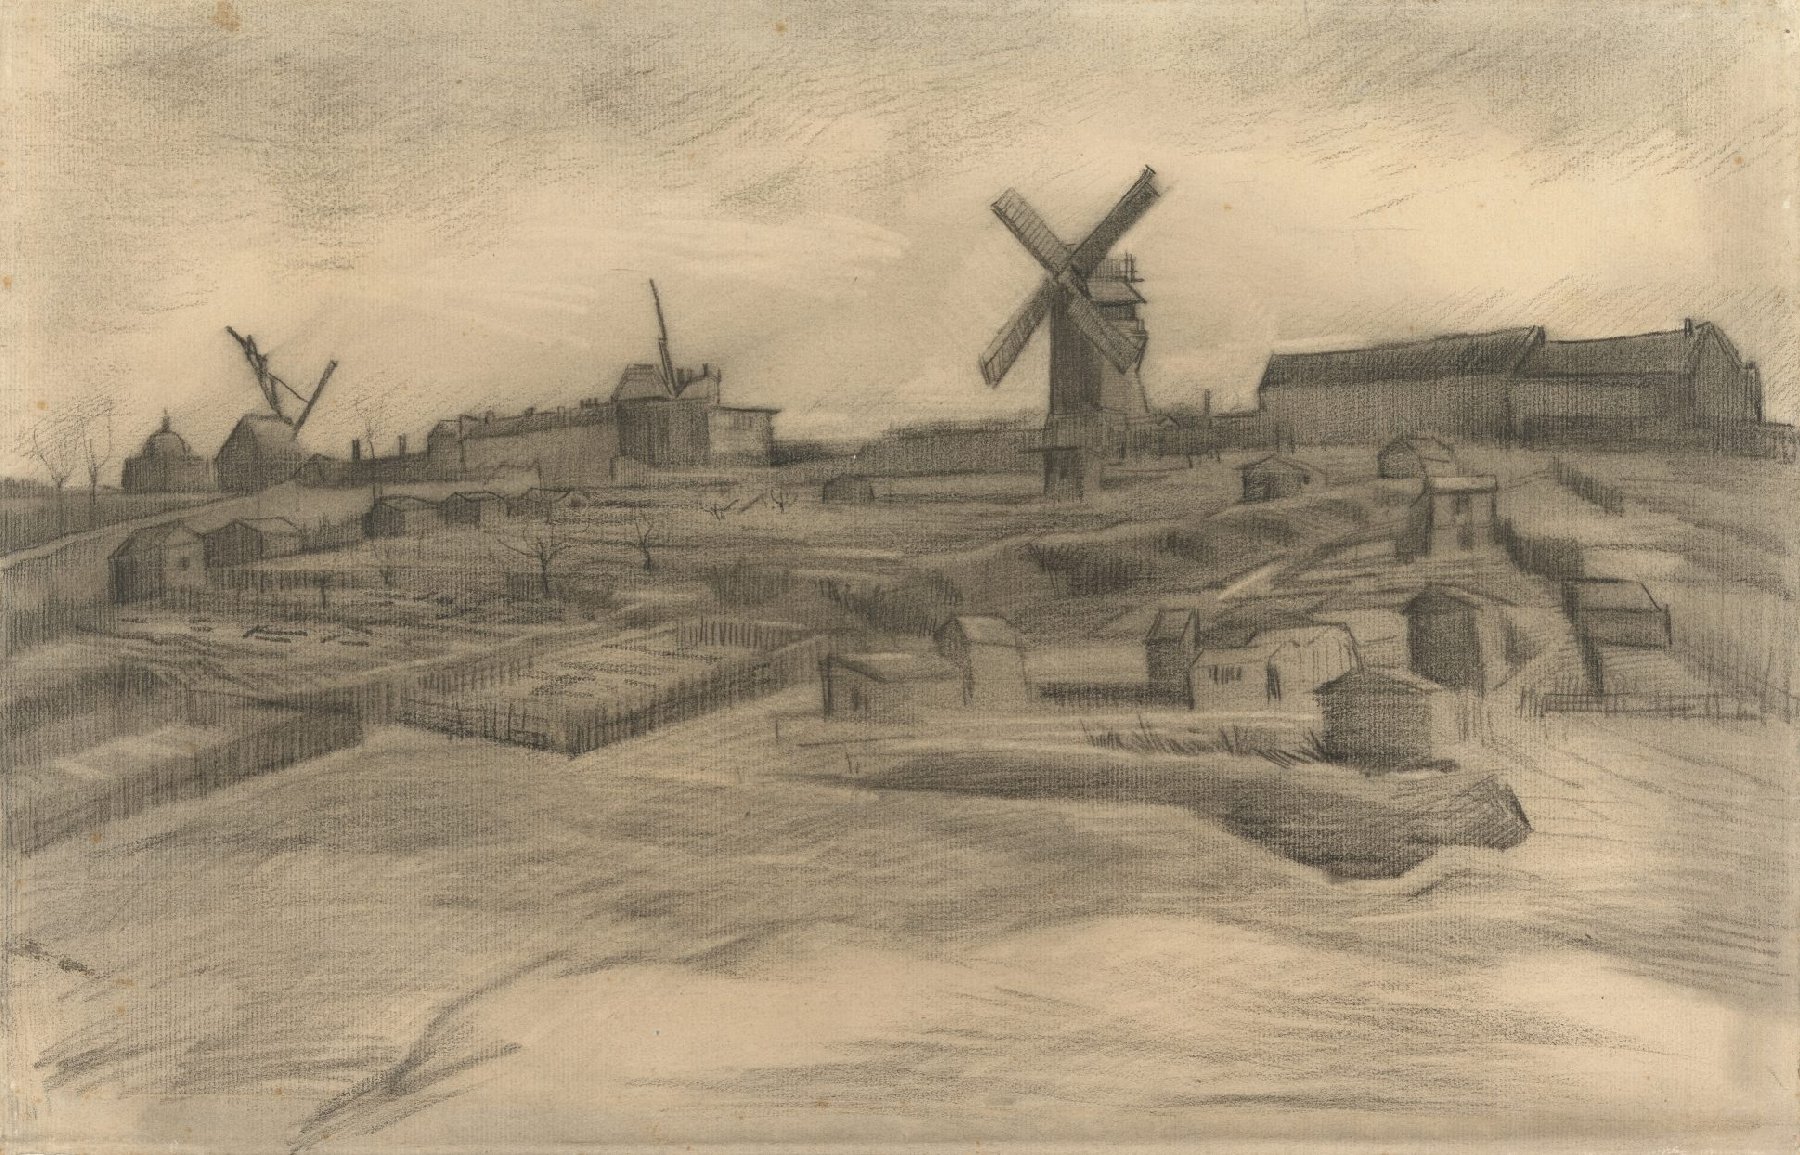 De heuvel van Montmartre Vincent van Gogh (1853 - 1890), Parijs, maart-april 1886